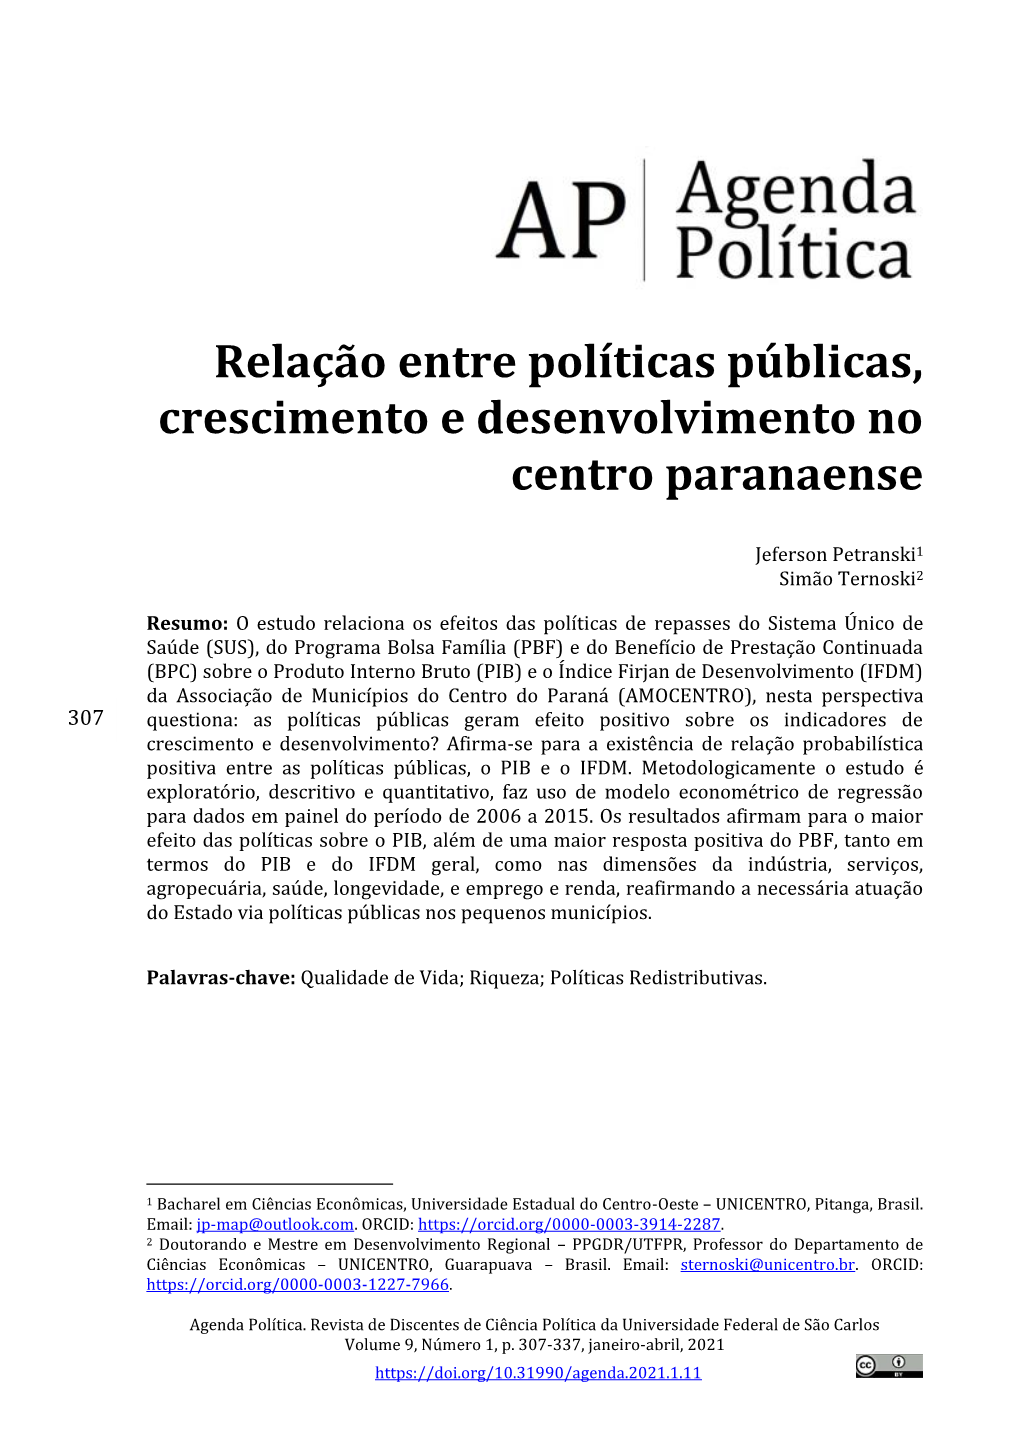 Relação Entre Políticas Públicas, Crescimento E Desenvolvimento No Centro Paranaense